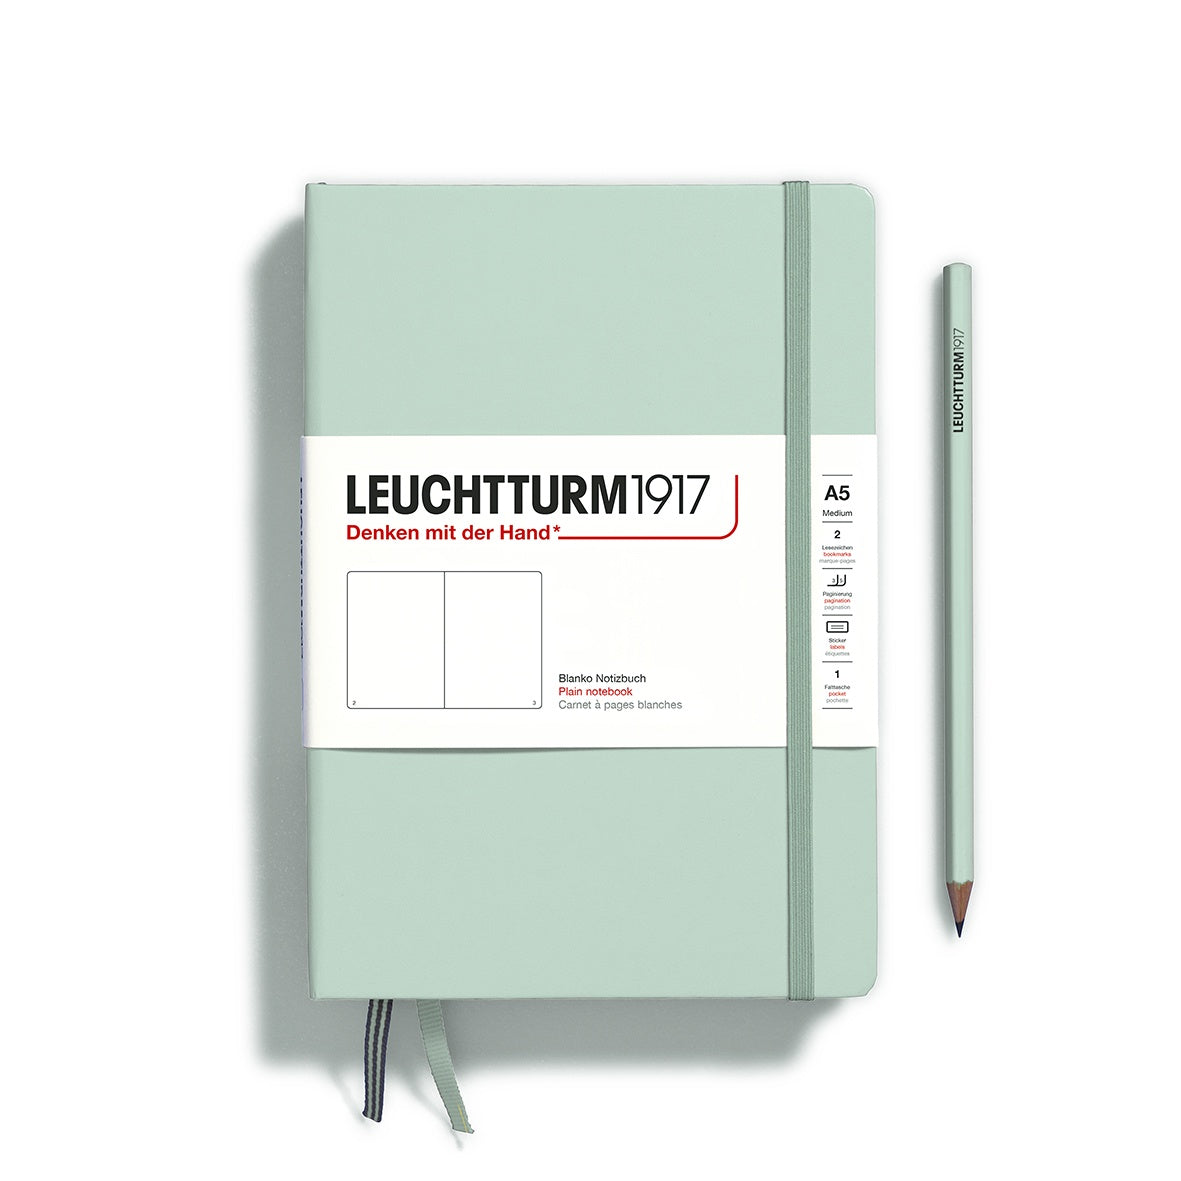 Leuchtturm1917 Notebook Medium (A5) Plain Mint Green - Pencraft the boutique